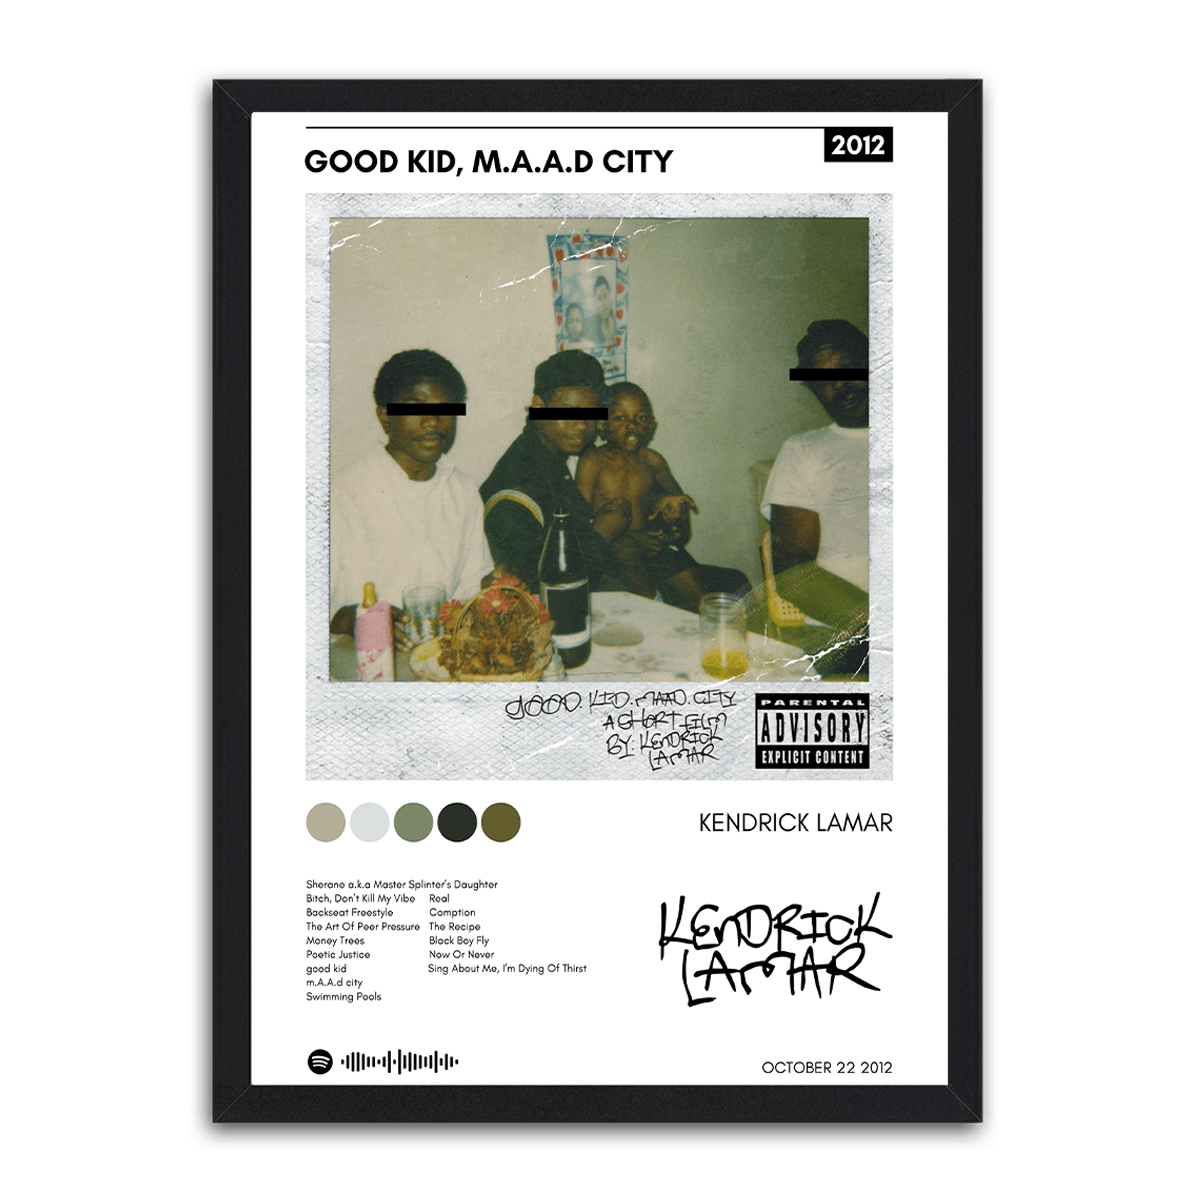 Good Kid, M.A.A.D City by Kendrick Lamar - PixMagic